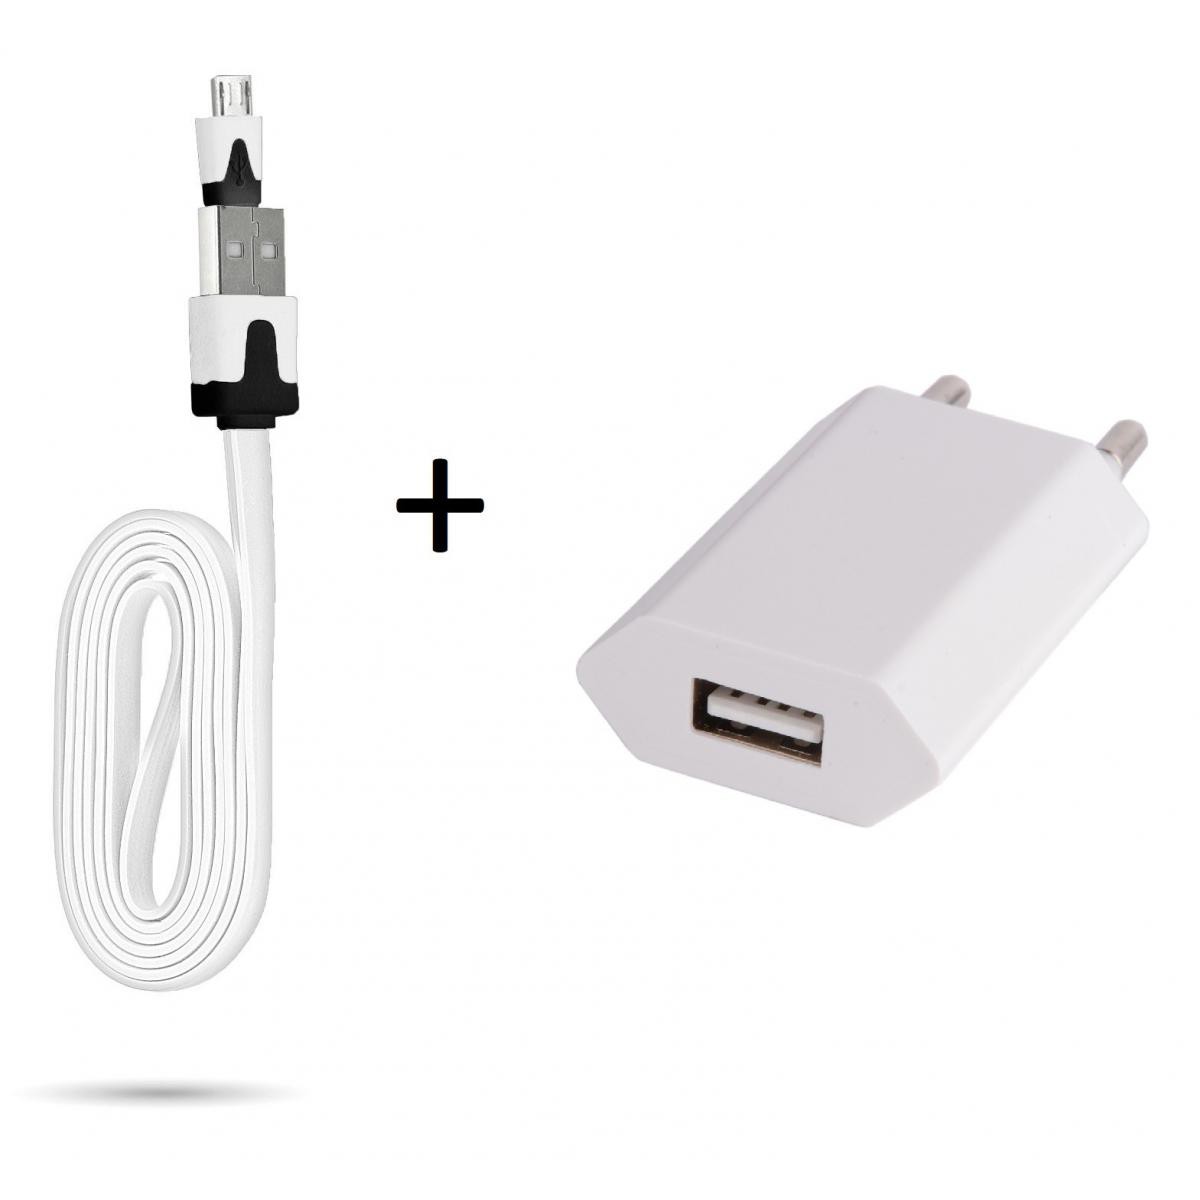 Shot - Cable Noodle 1m Chargeur + Prise Secteur pour "WIKO Y61" Smartphone Micro USB Murale Pack Android (BLANC) - Chargeur secteur téléphone